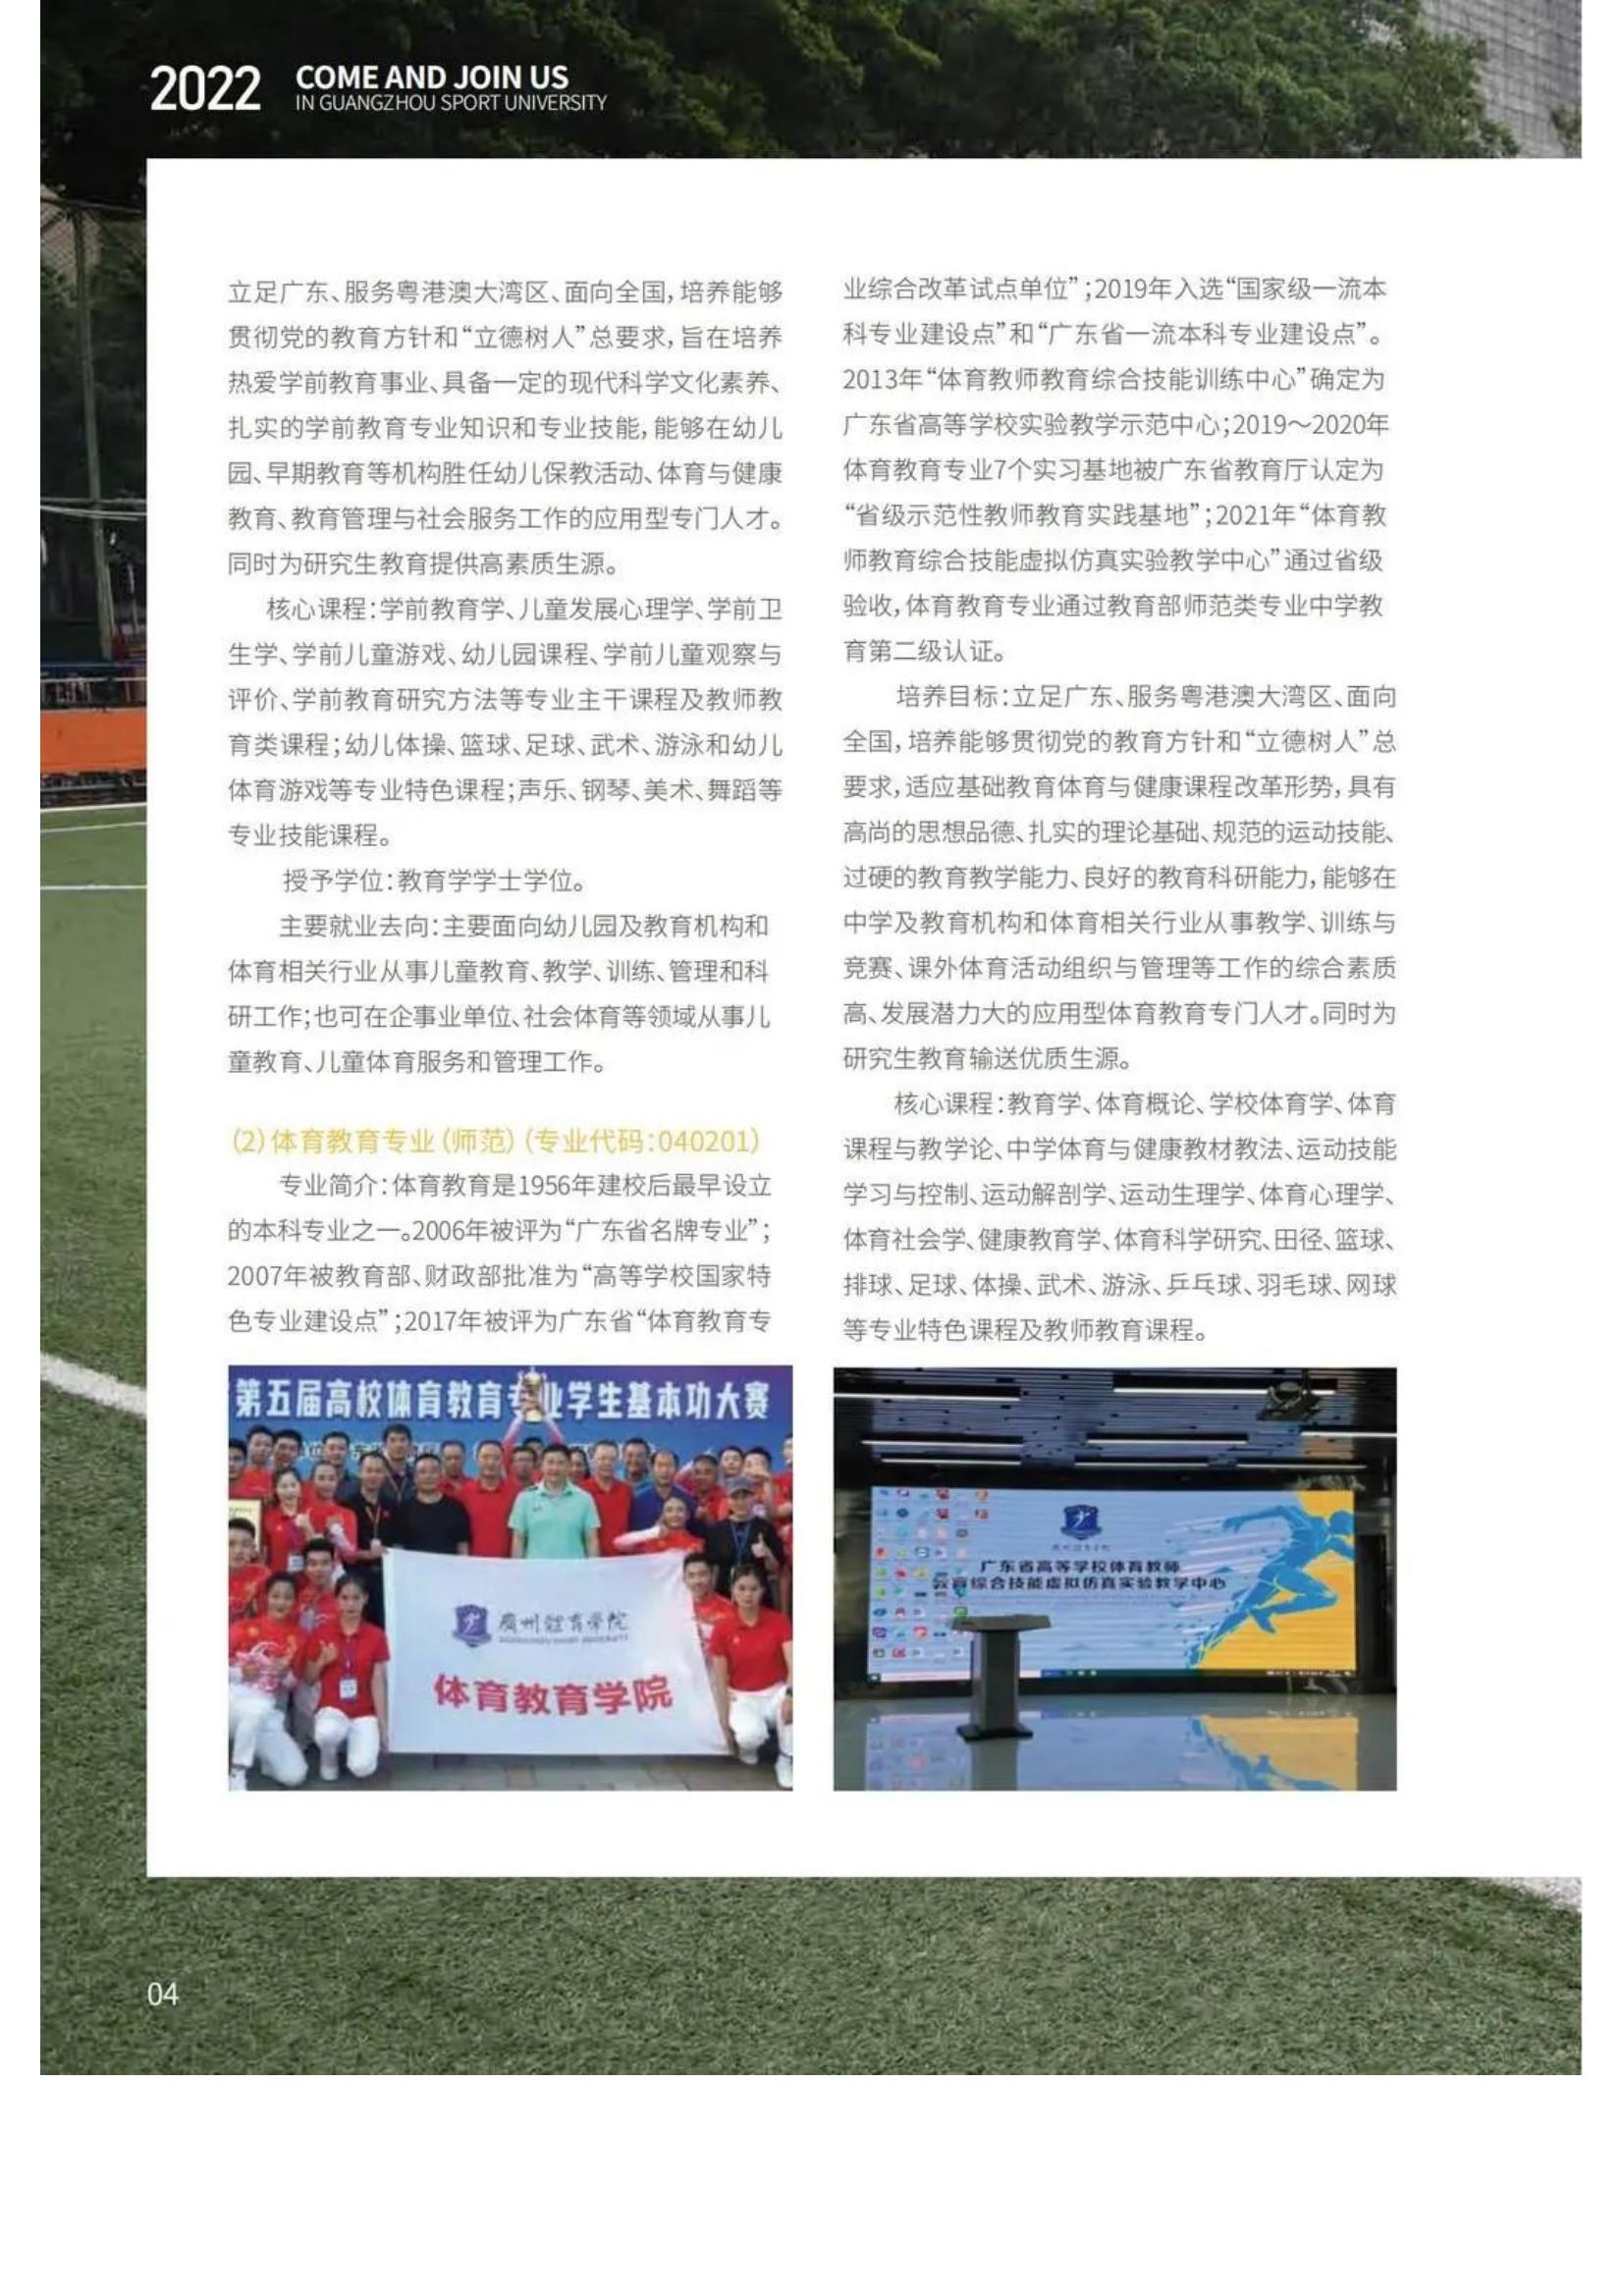 广州体育学院2022年报考指南发布_06.jpg